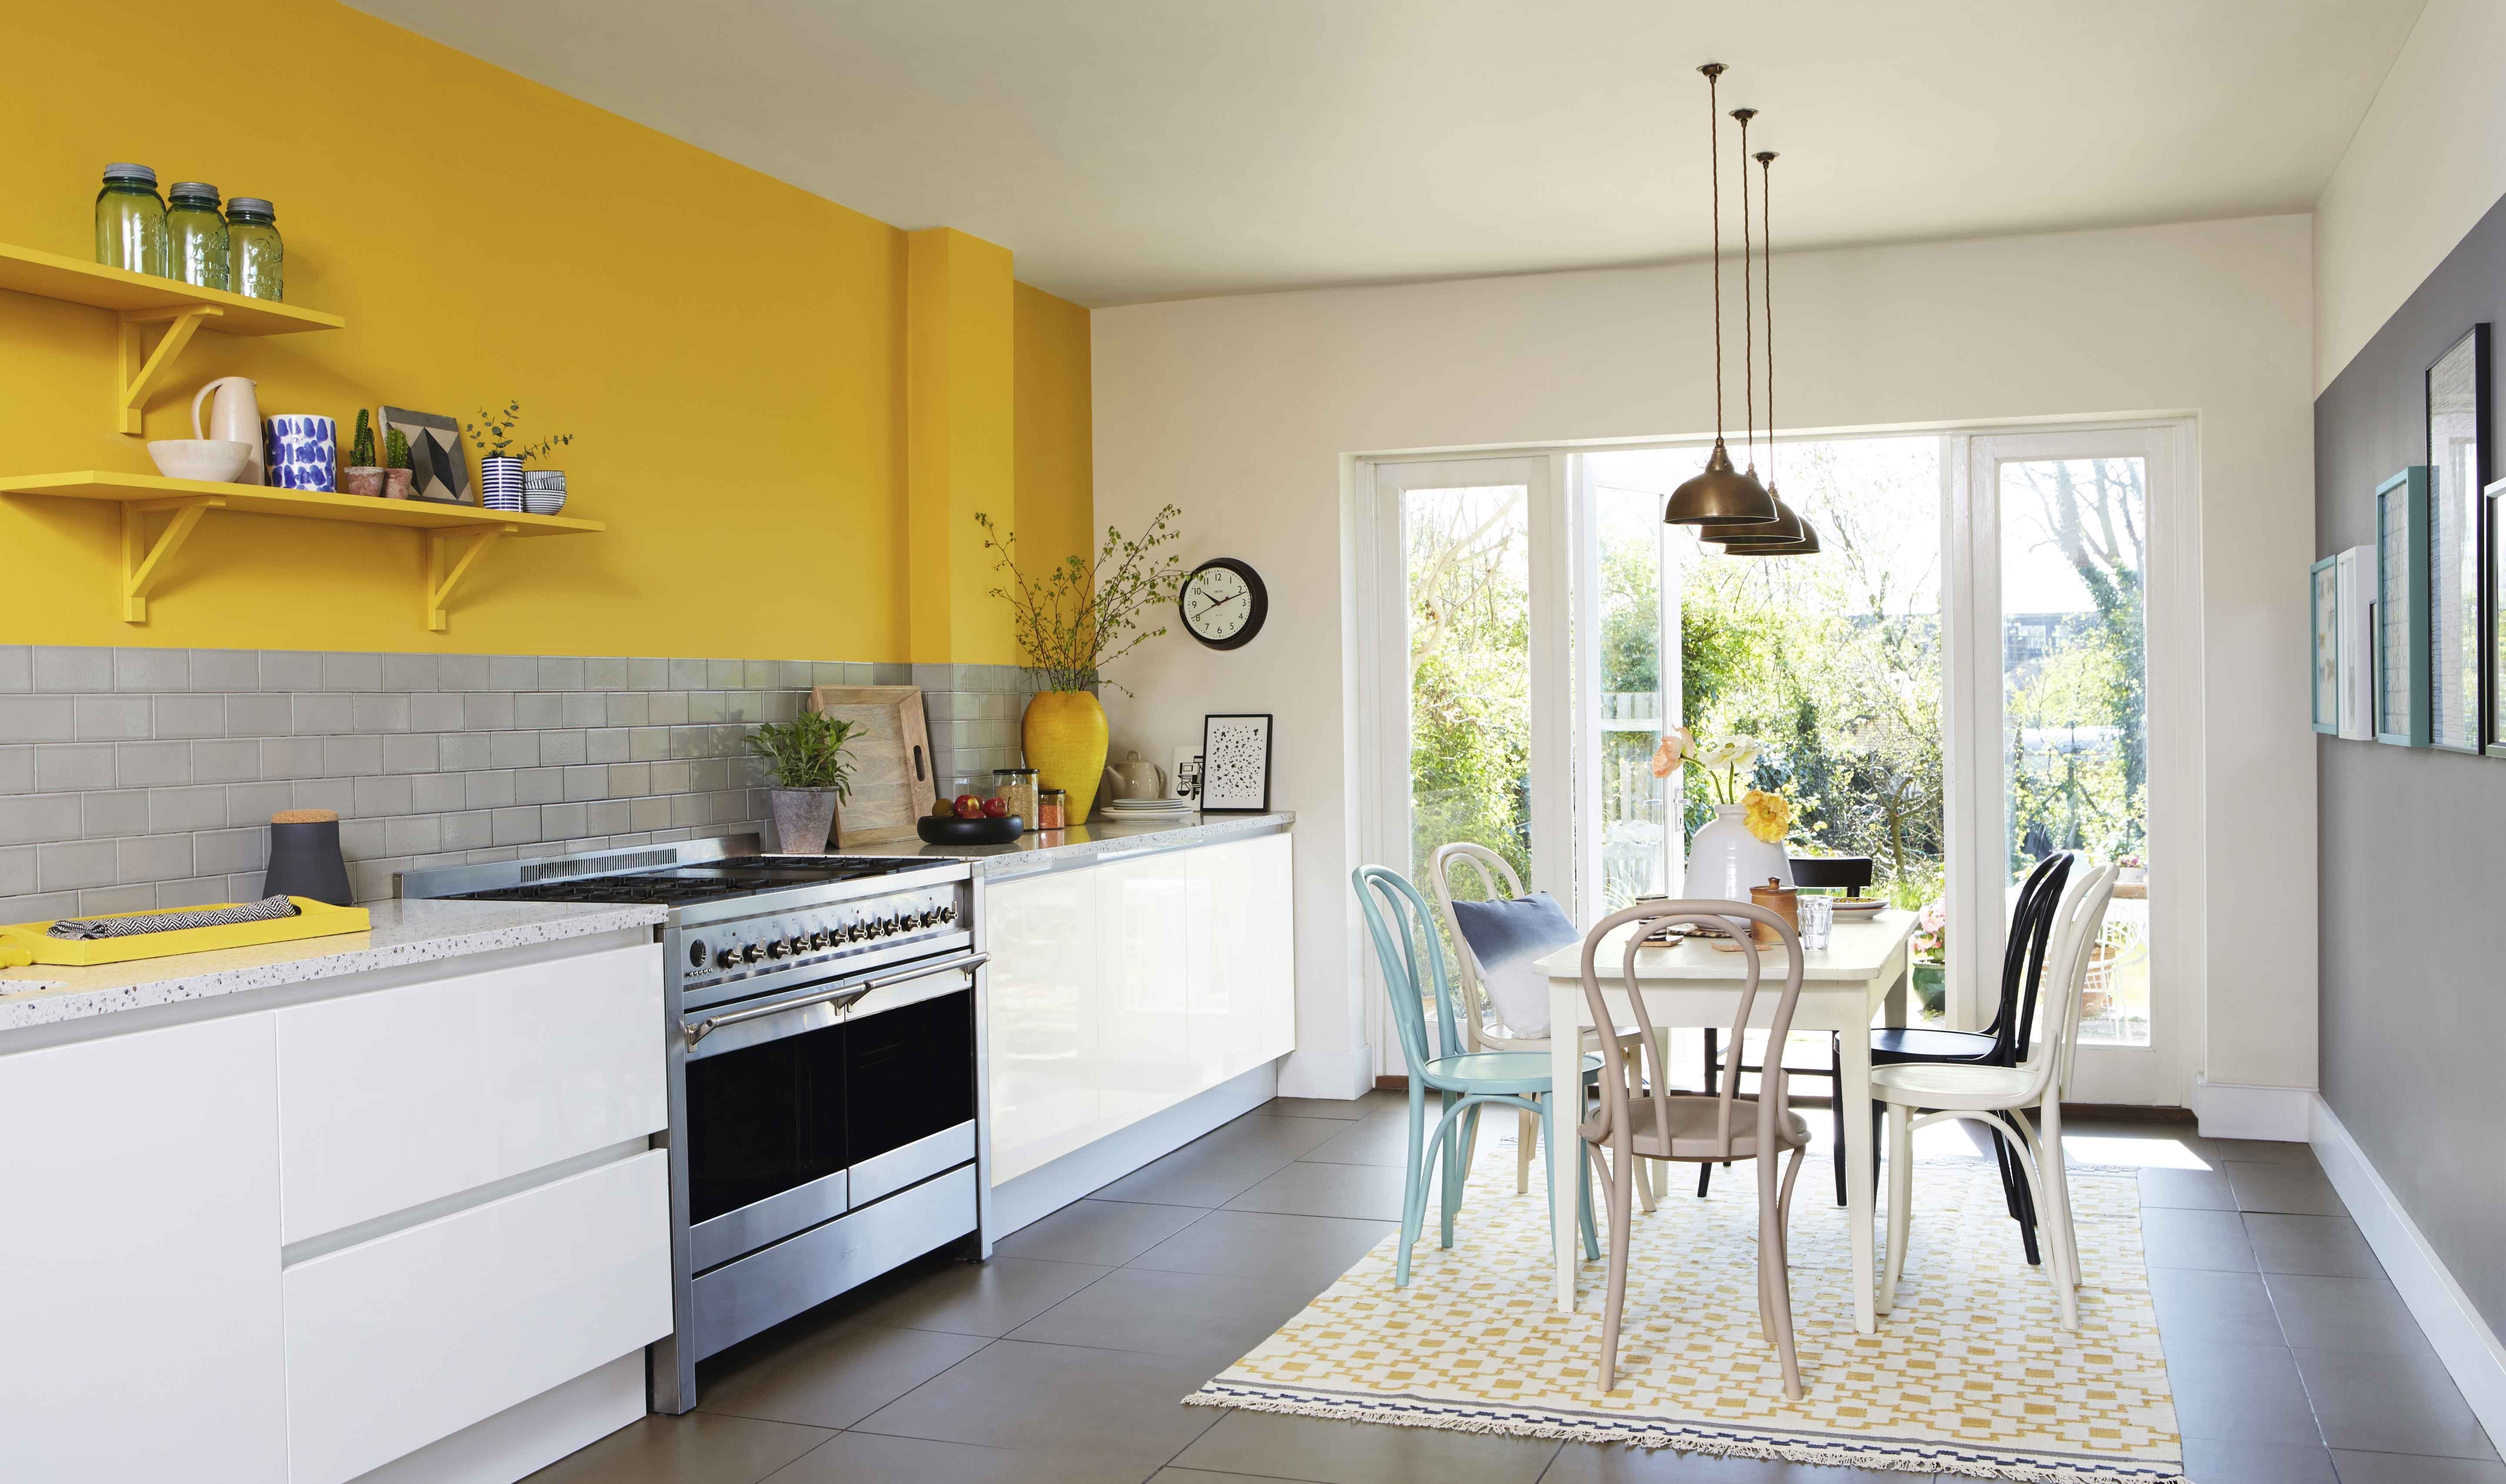 Бело желтая кухня. Желтые стены в интерьере. Желтая кухня в интерьере. Сочетание желтого в интерьере. Лимонный цвет стен на кухне.